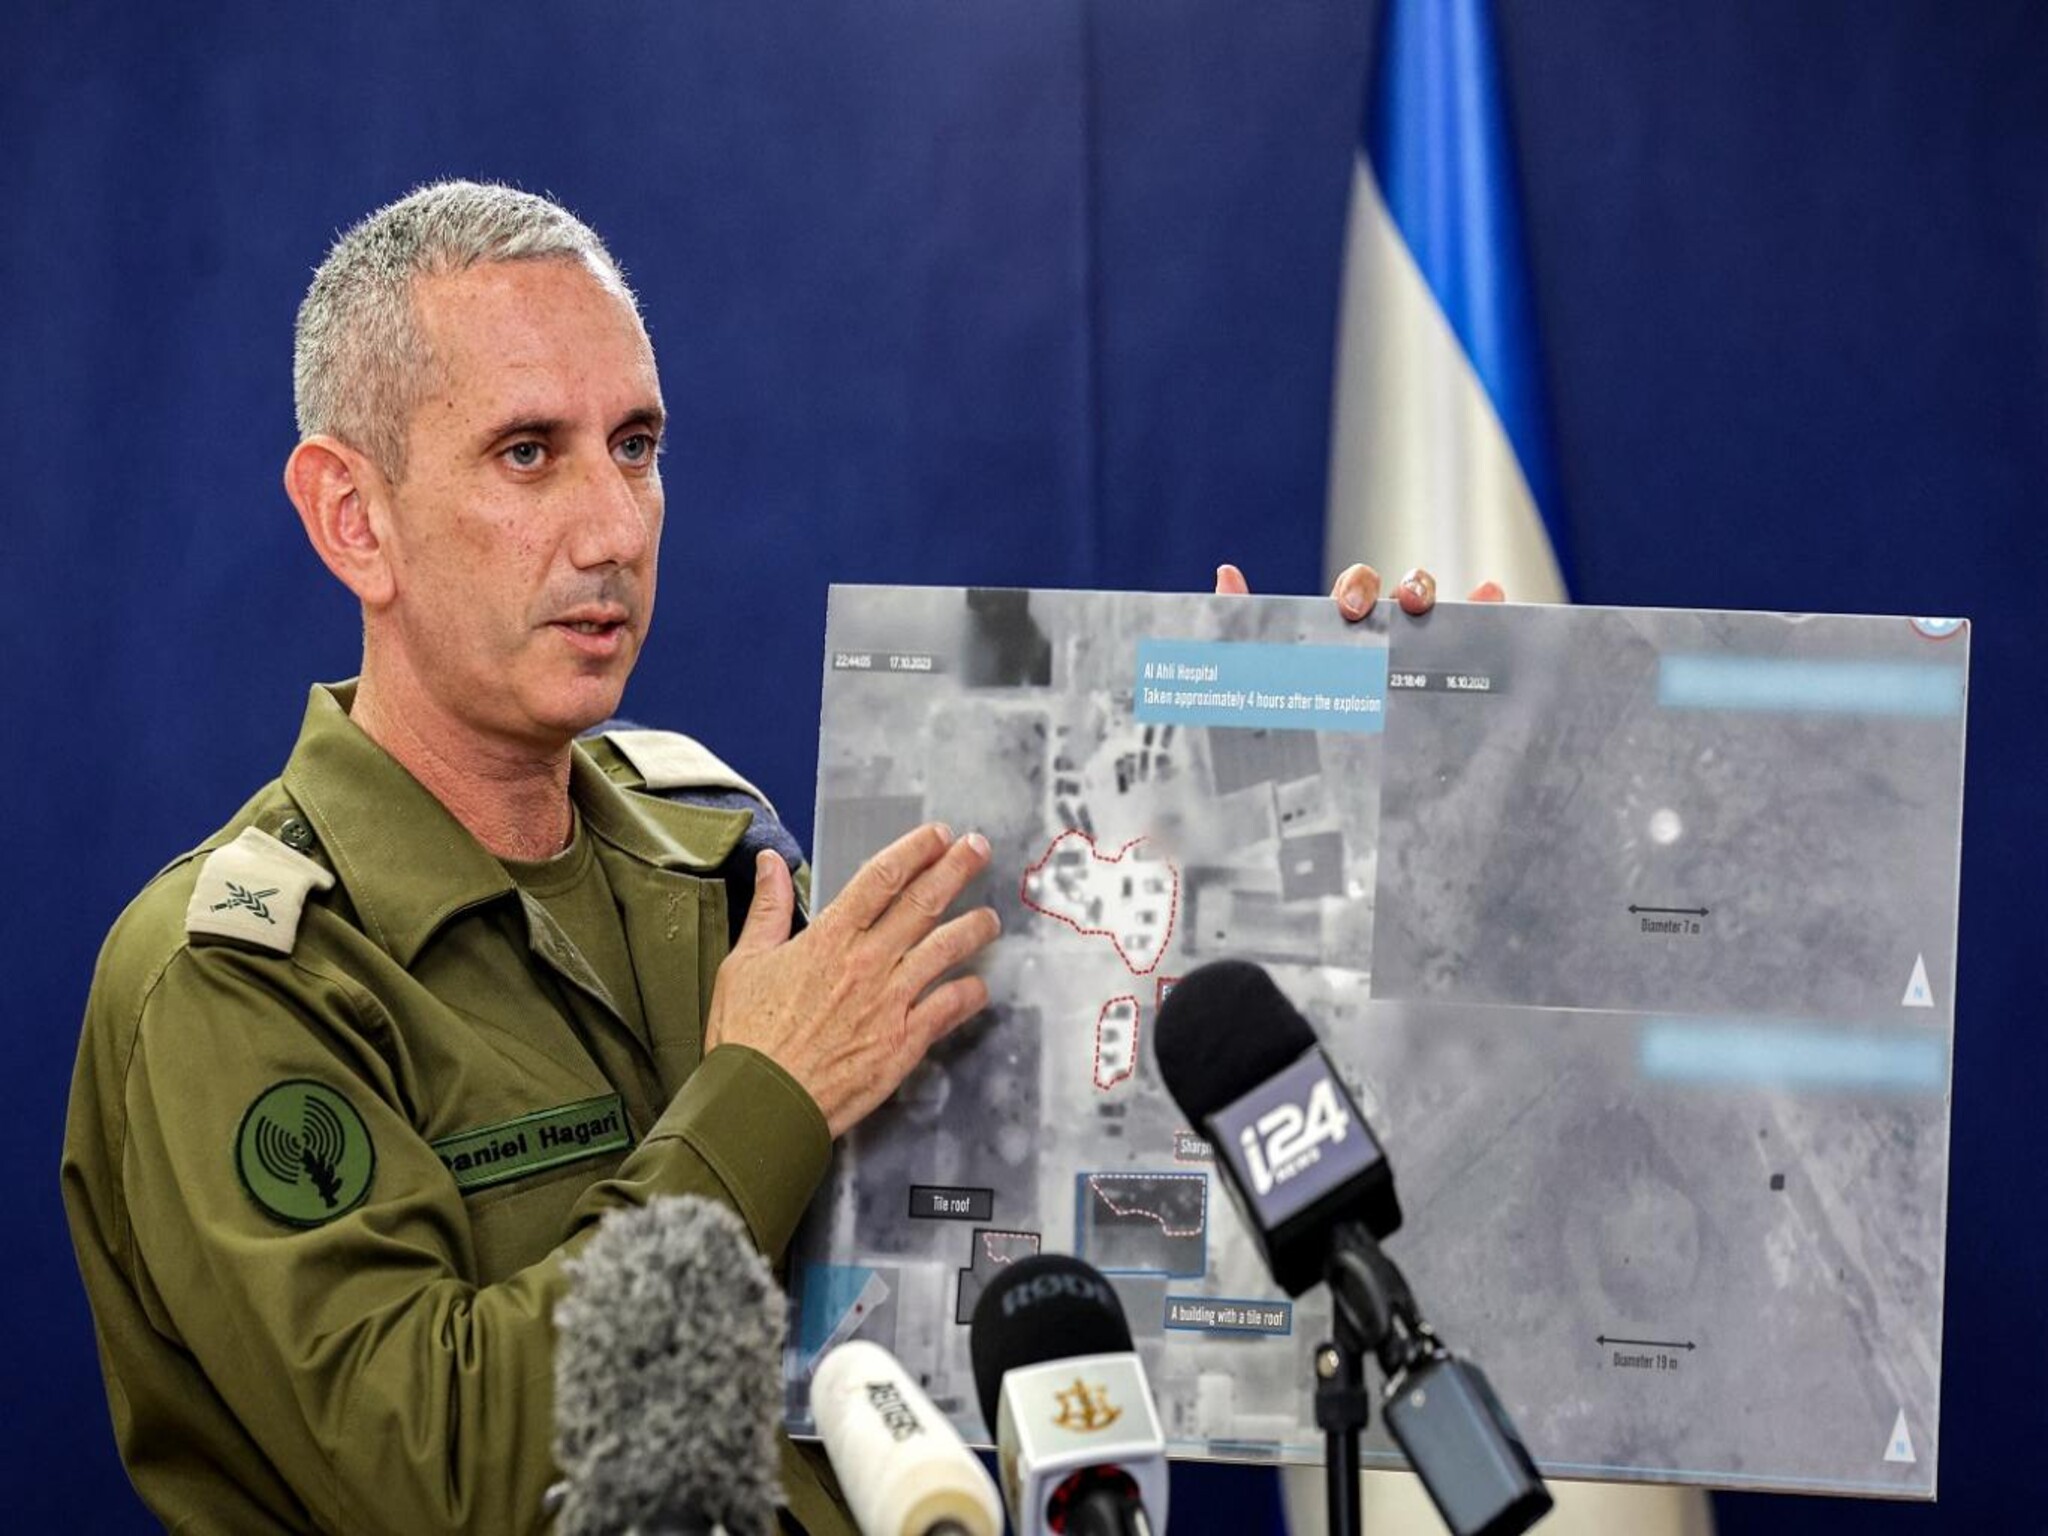 المتحدث بأسم الجيش الإسرائيلي...المجندة المحررة أعطتنا معلومات مذهلة